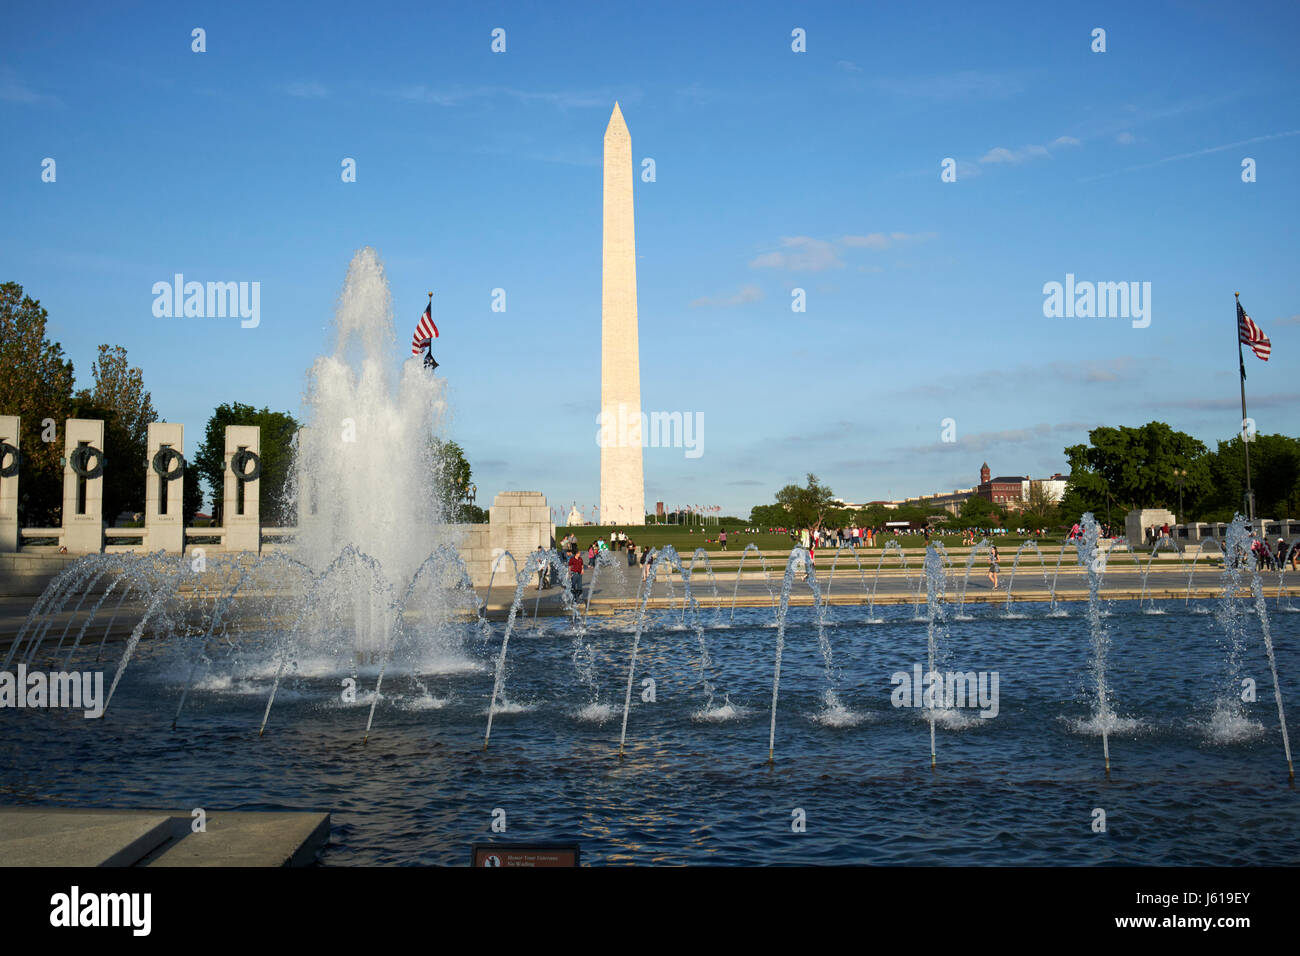 Piscine memorial et fontaines du national world war 2 memorial devant le Washington monument Washington DC USA Banque D'Images